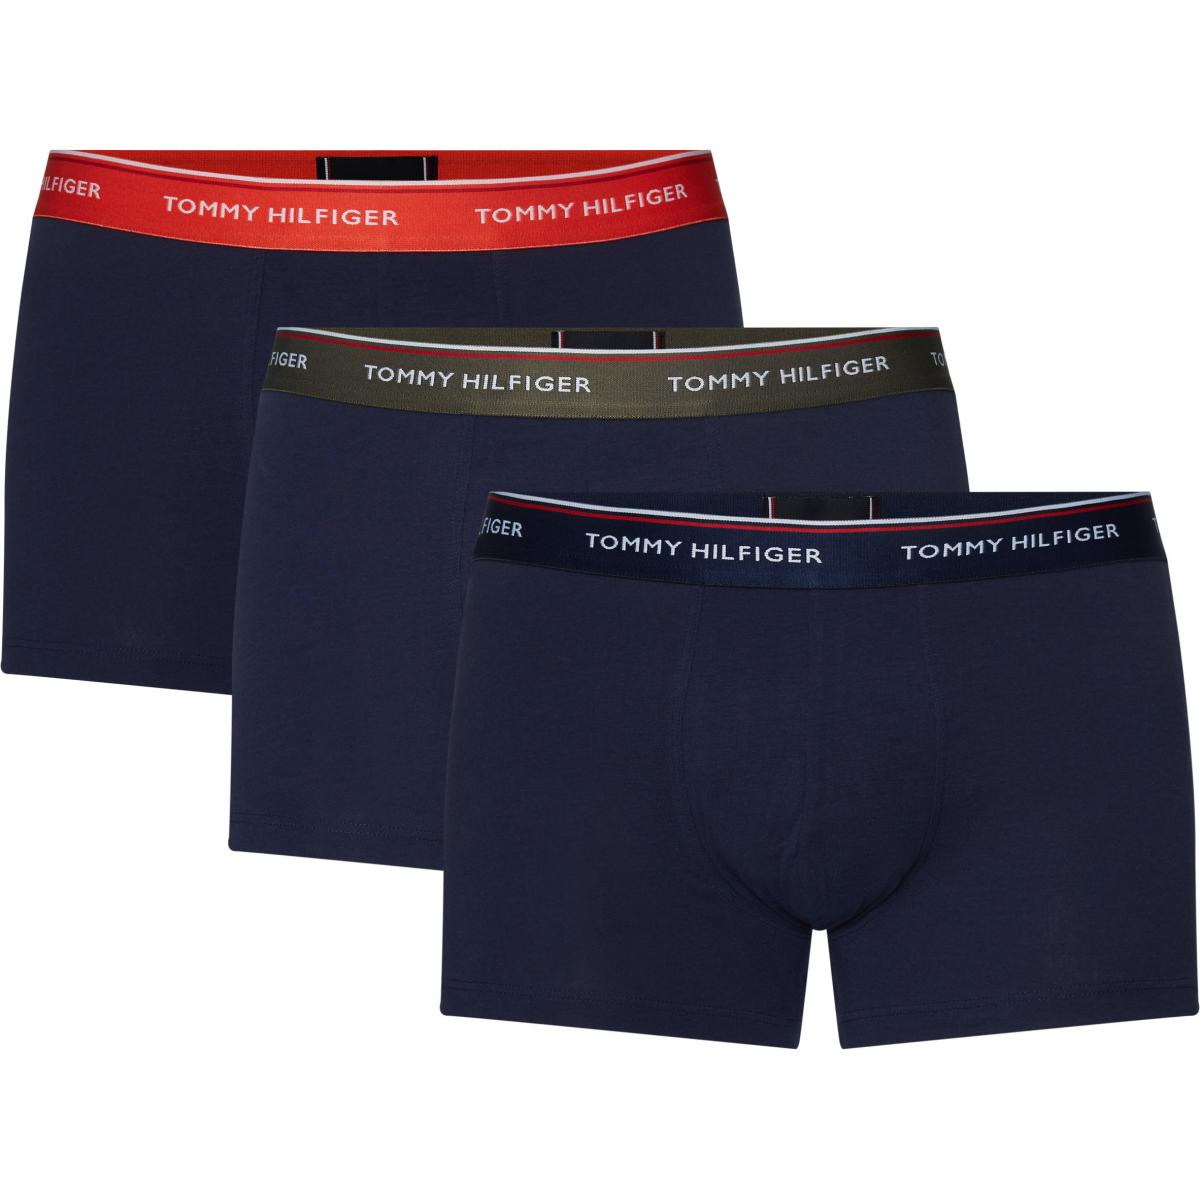 3P WB TRUNK Tommy hilfiger underwear 